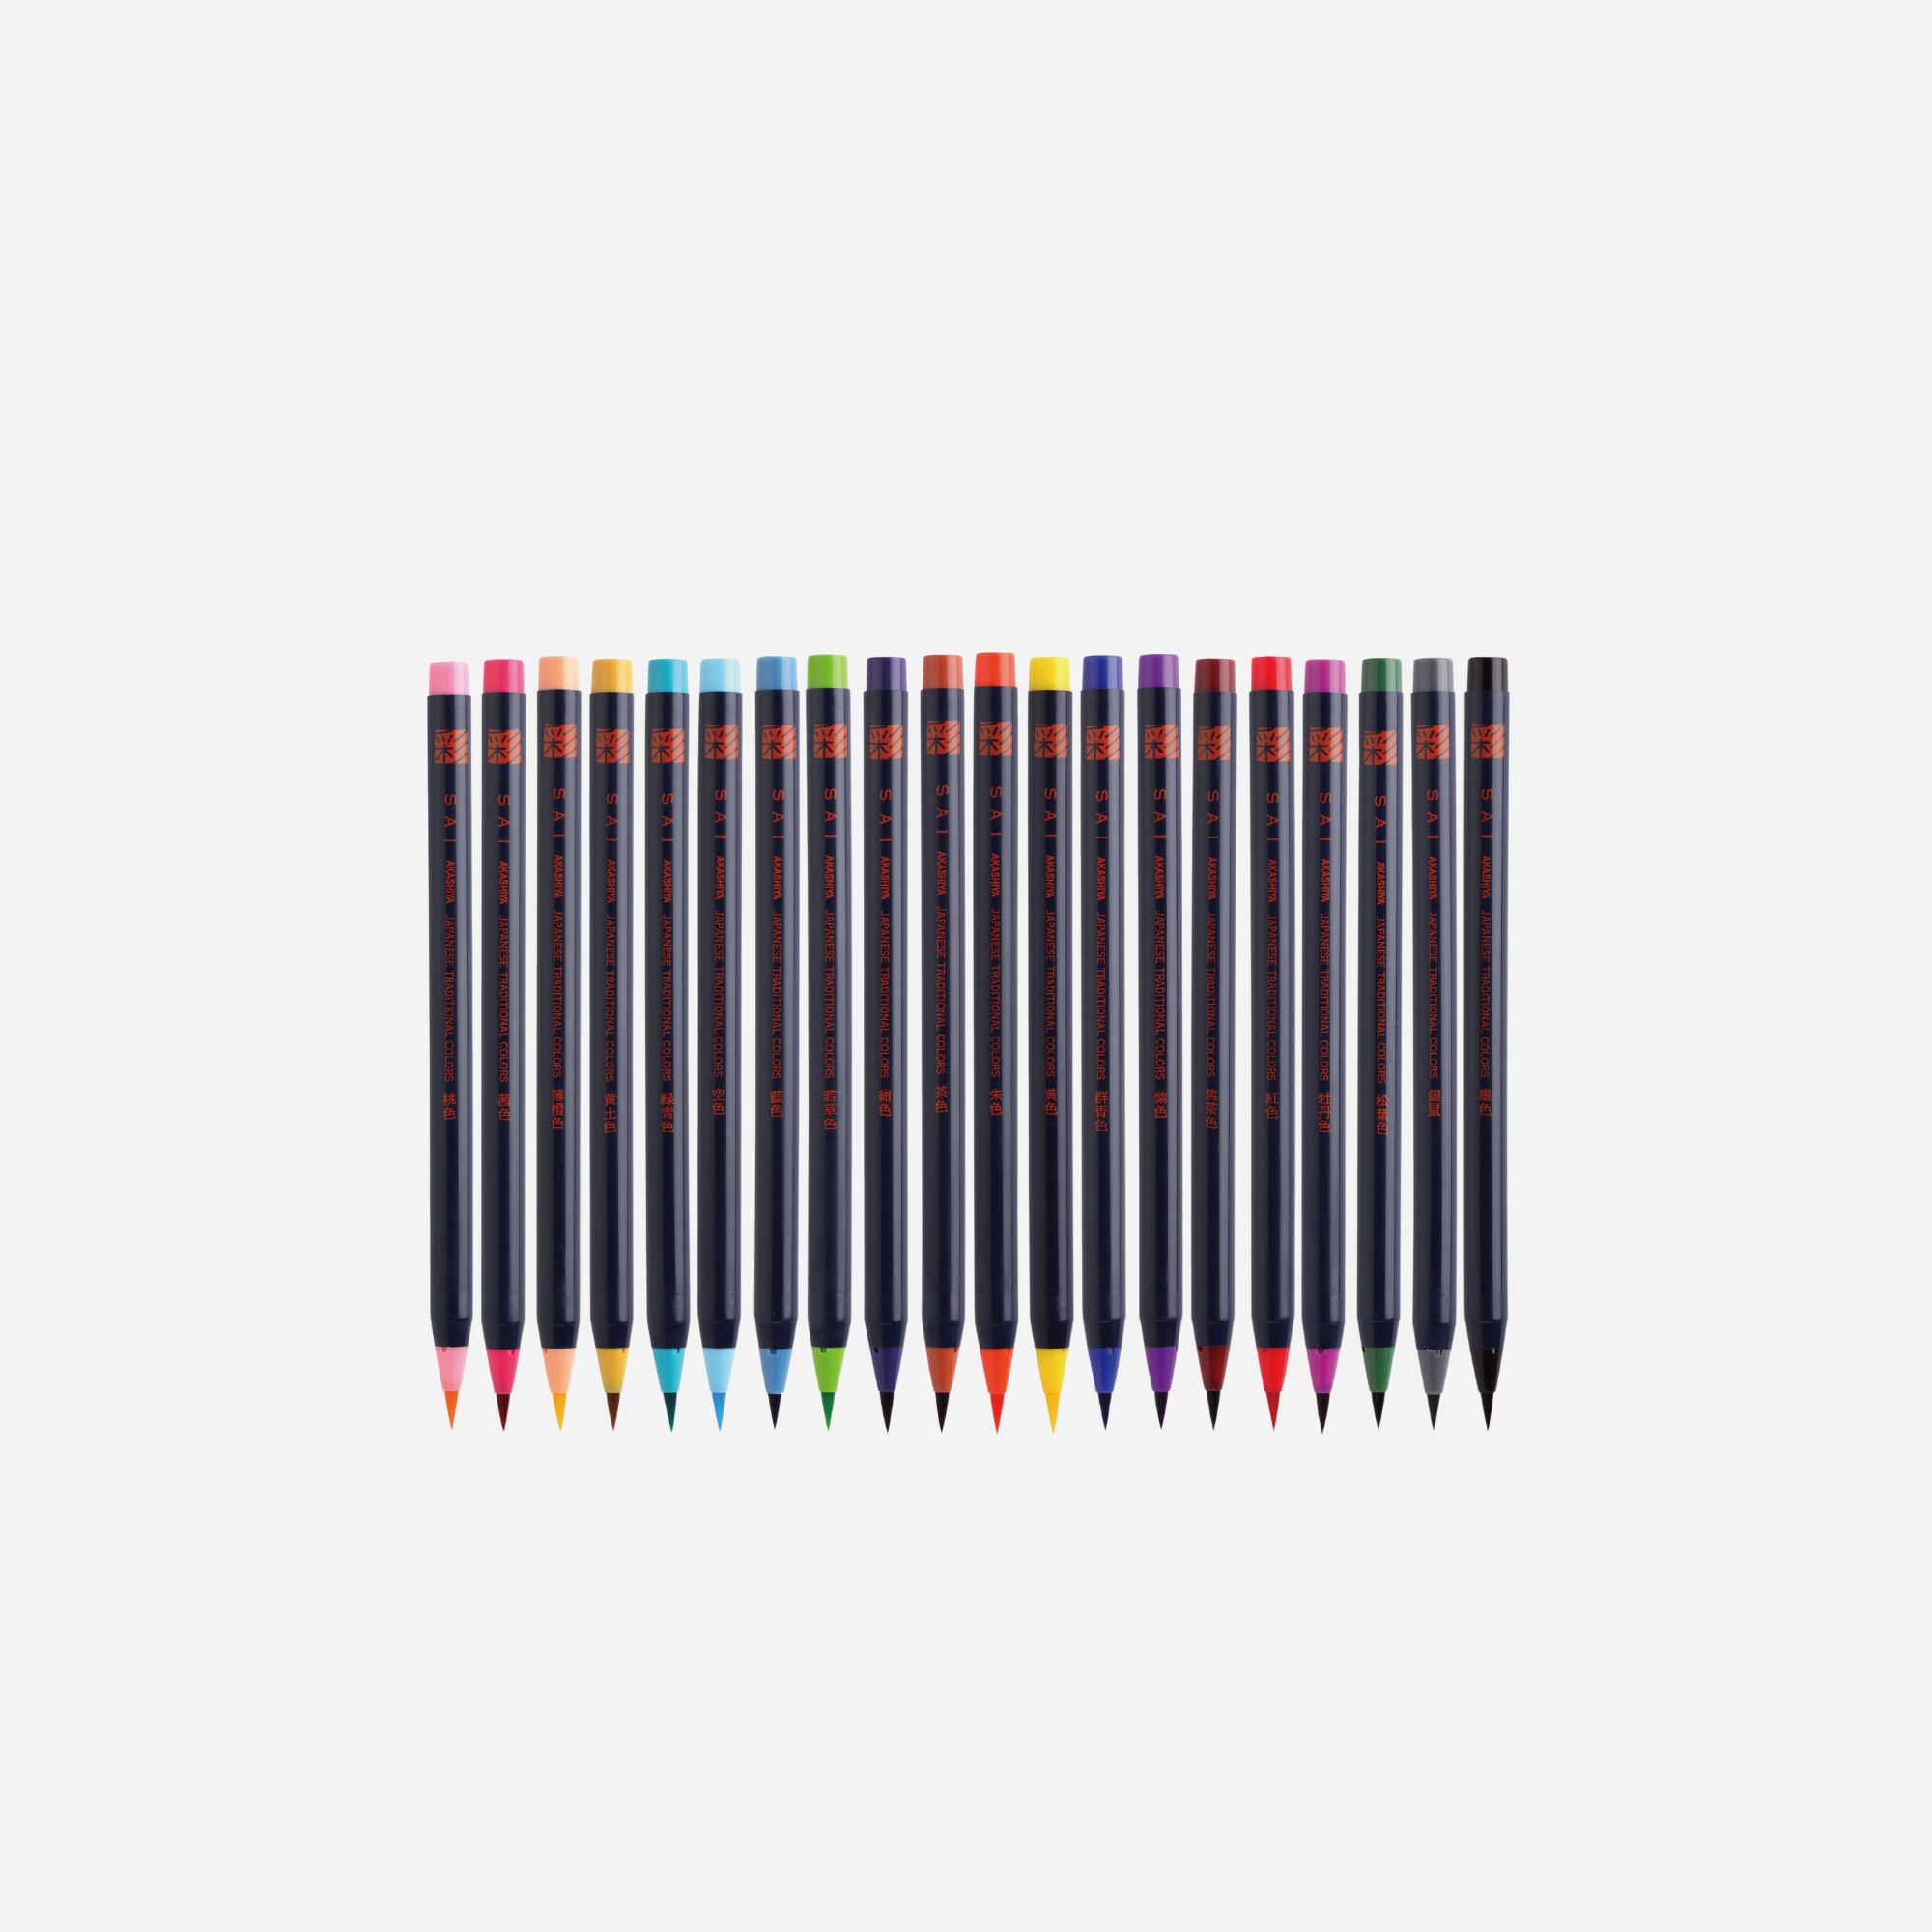 SUISAI Brush Pen 20 color set